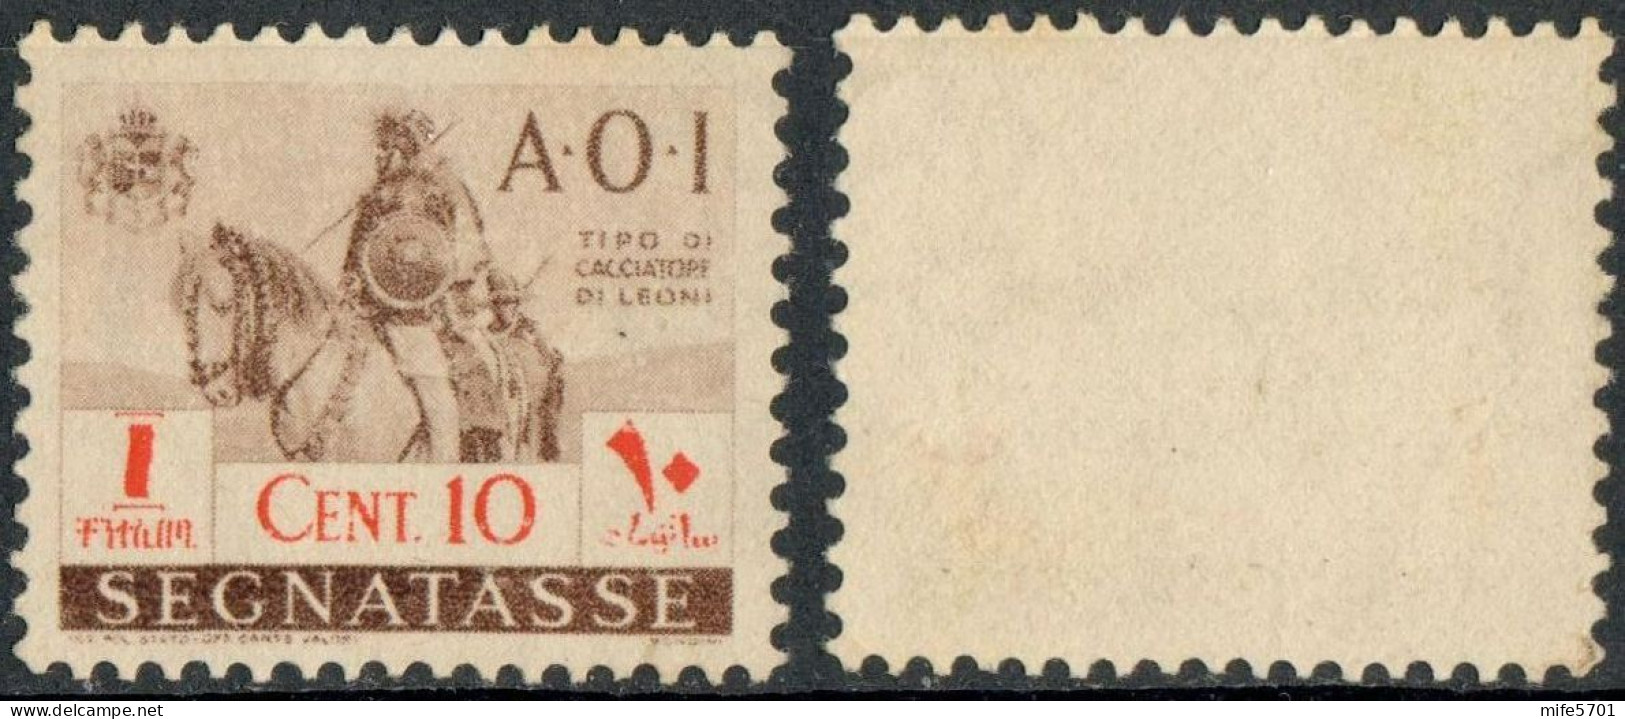 REGNO AFRICA ORIENTALE ITALIANA 1941 A.O.I. SEGNATASSE 'CACCIATORE DI LEONI A CAVALLO' C. 10 SENZA GOMMA (*) SASSONE 11 - Italian Eastern Africa